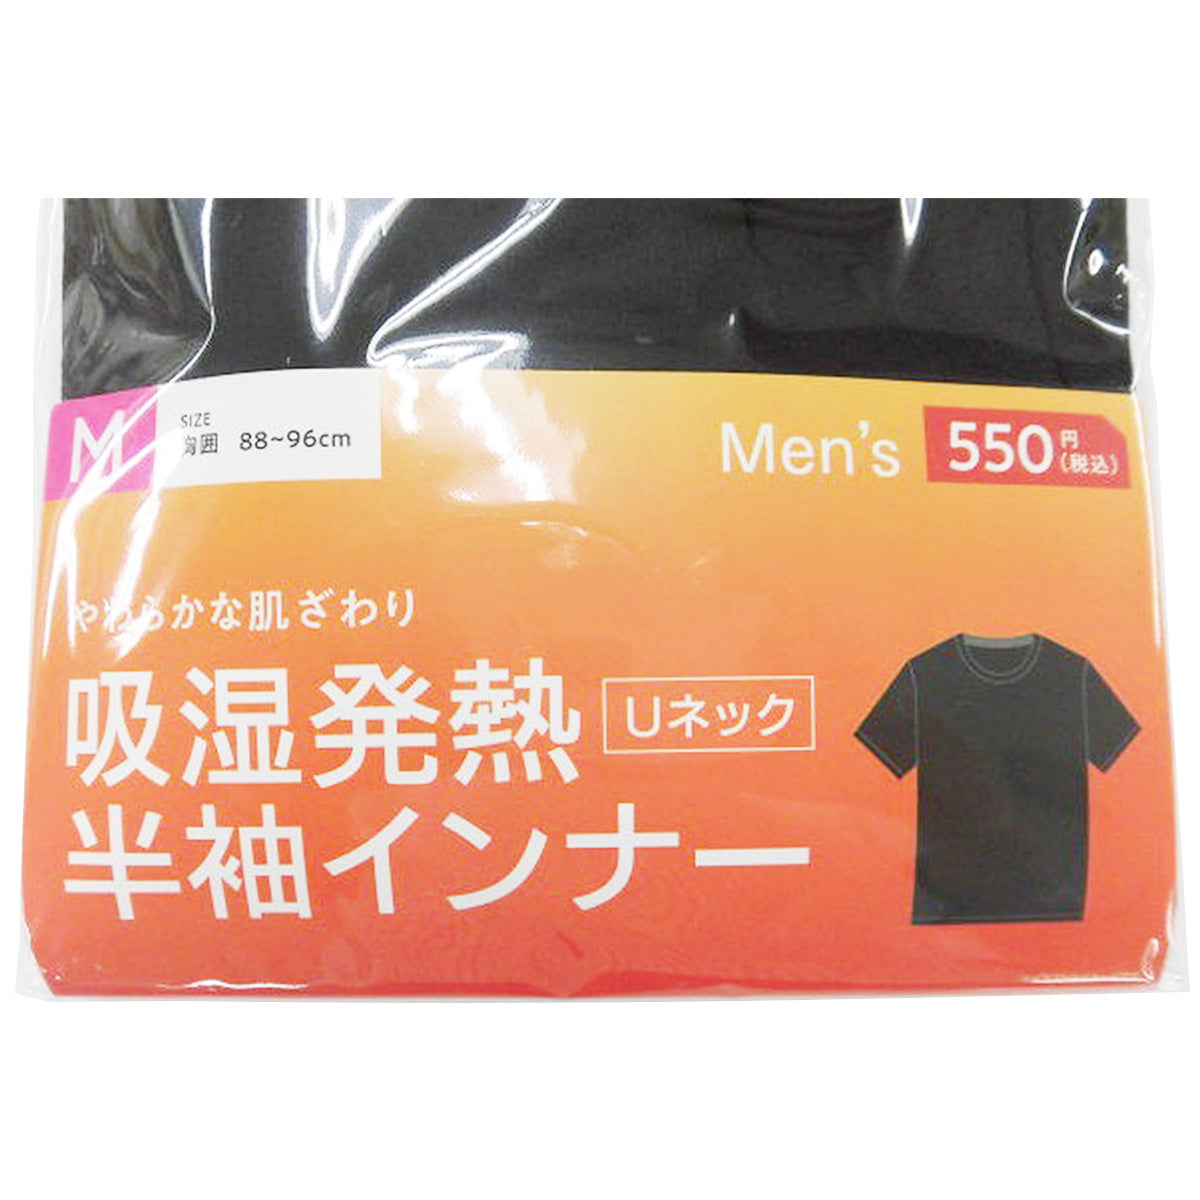 【在庫限り】Tシャツ 吸湿 下着 半袖シャツ 紳士 メンズ用インナー レーヨン M 304323